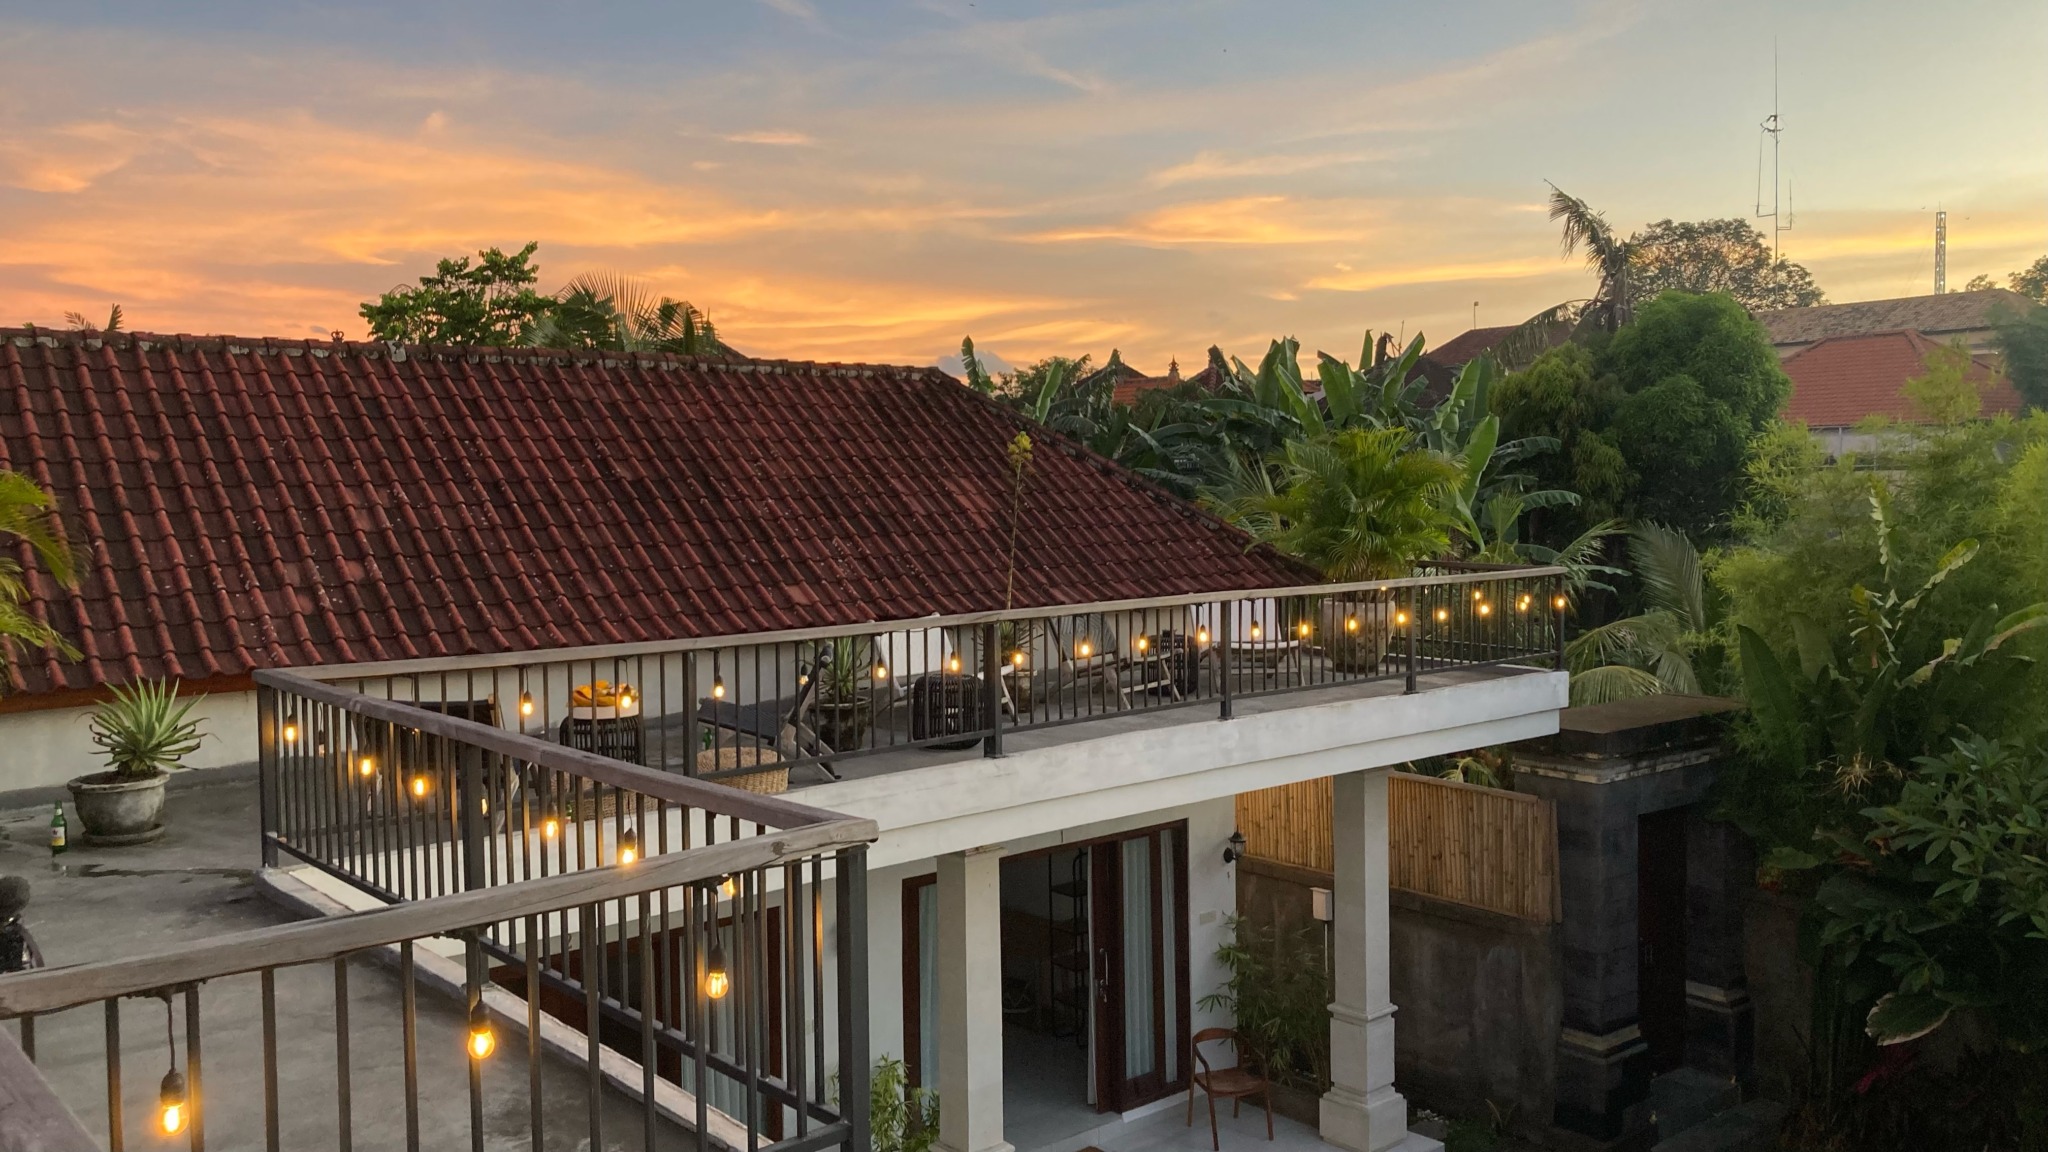 Roaldi retked – Bali 1